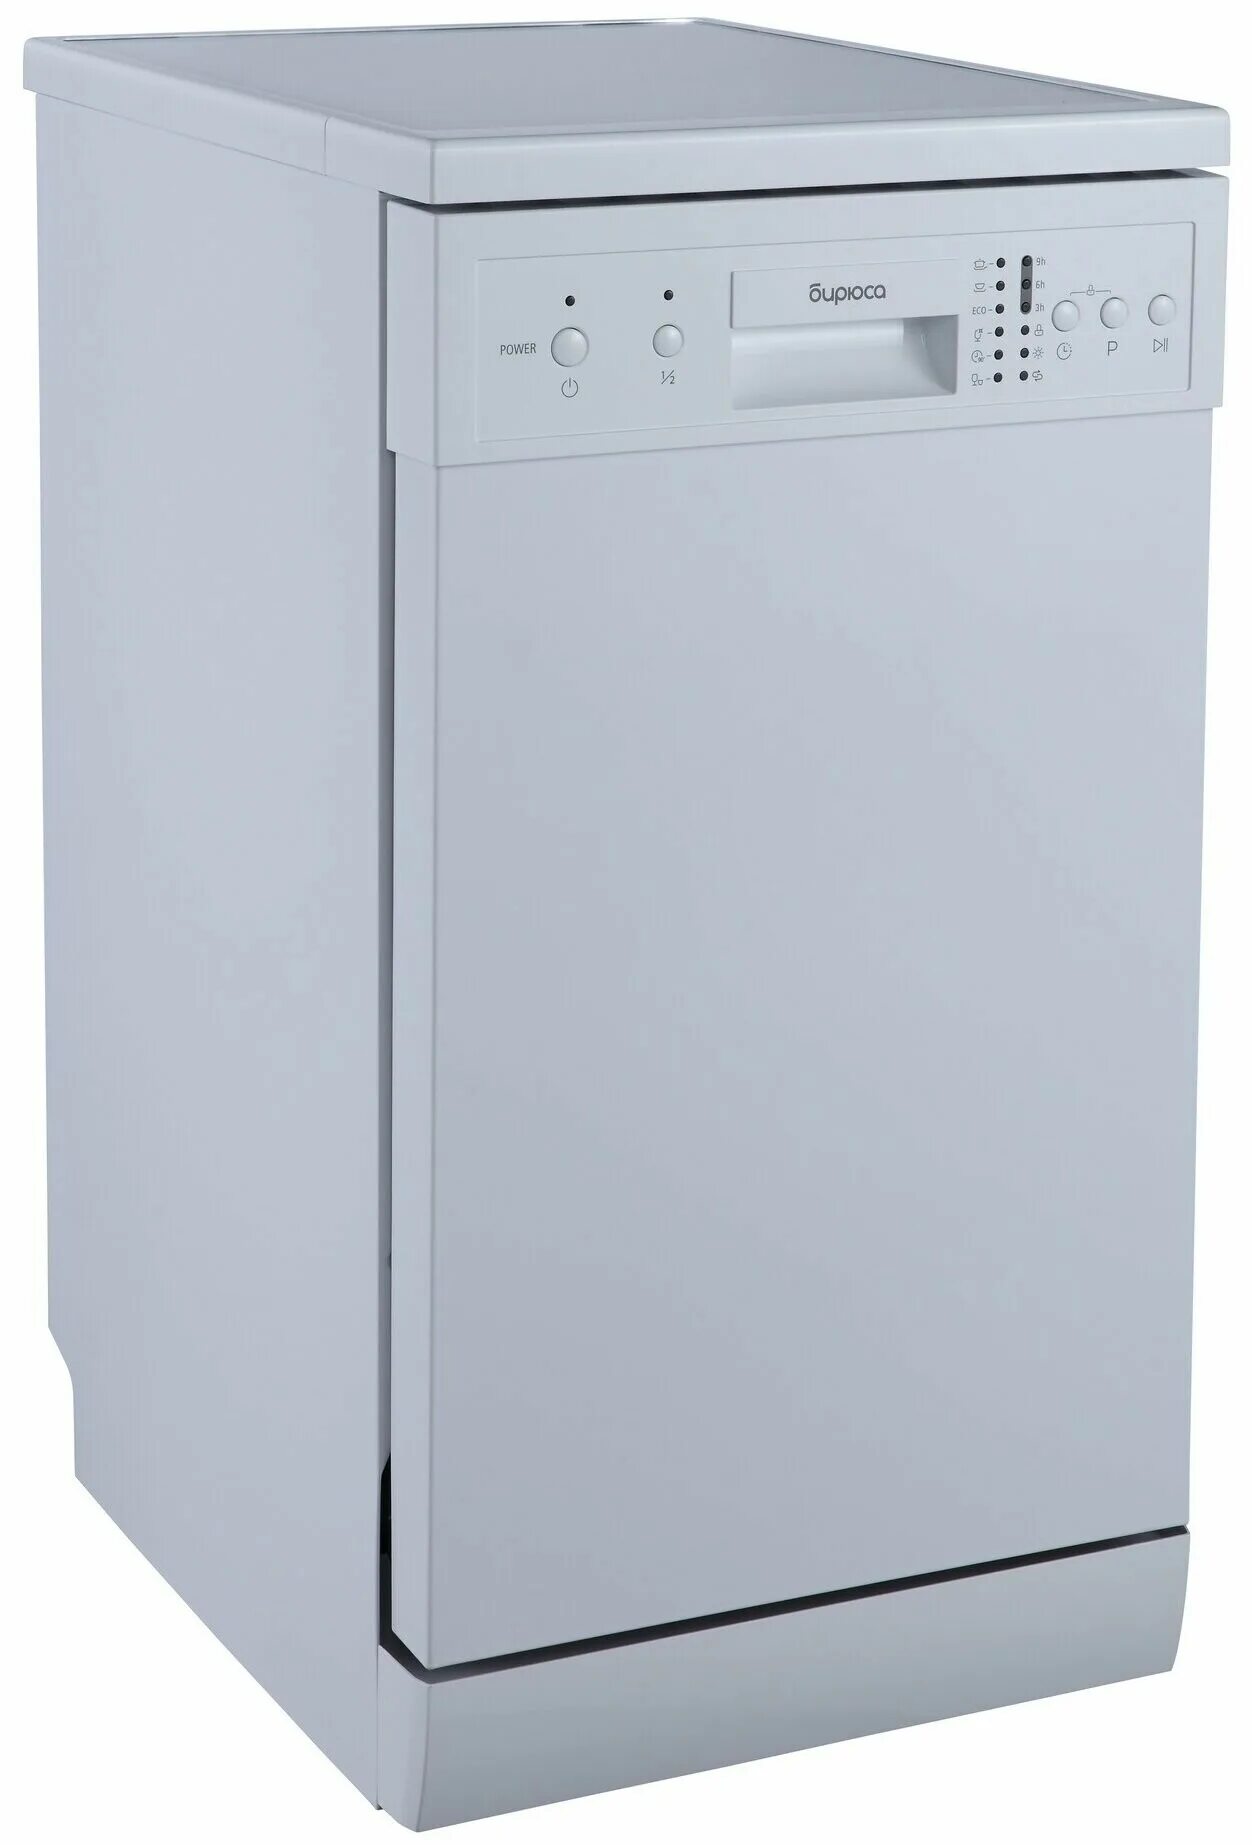 Посудомоечная машина бирюса купить. Посудомоечная машина Бирюса DWF-409/6w. Посудомоечная машина Delonghi ddws09s quarzo. Посудомоечная машина HIBERG f46 920 w.